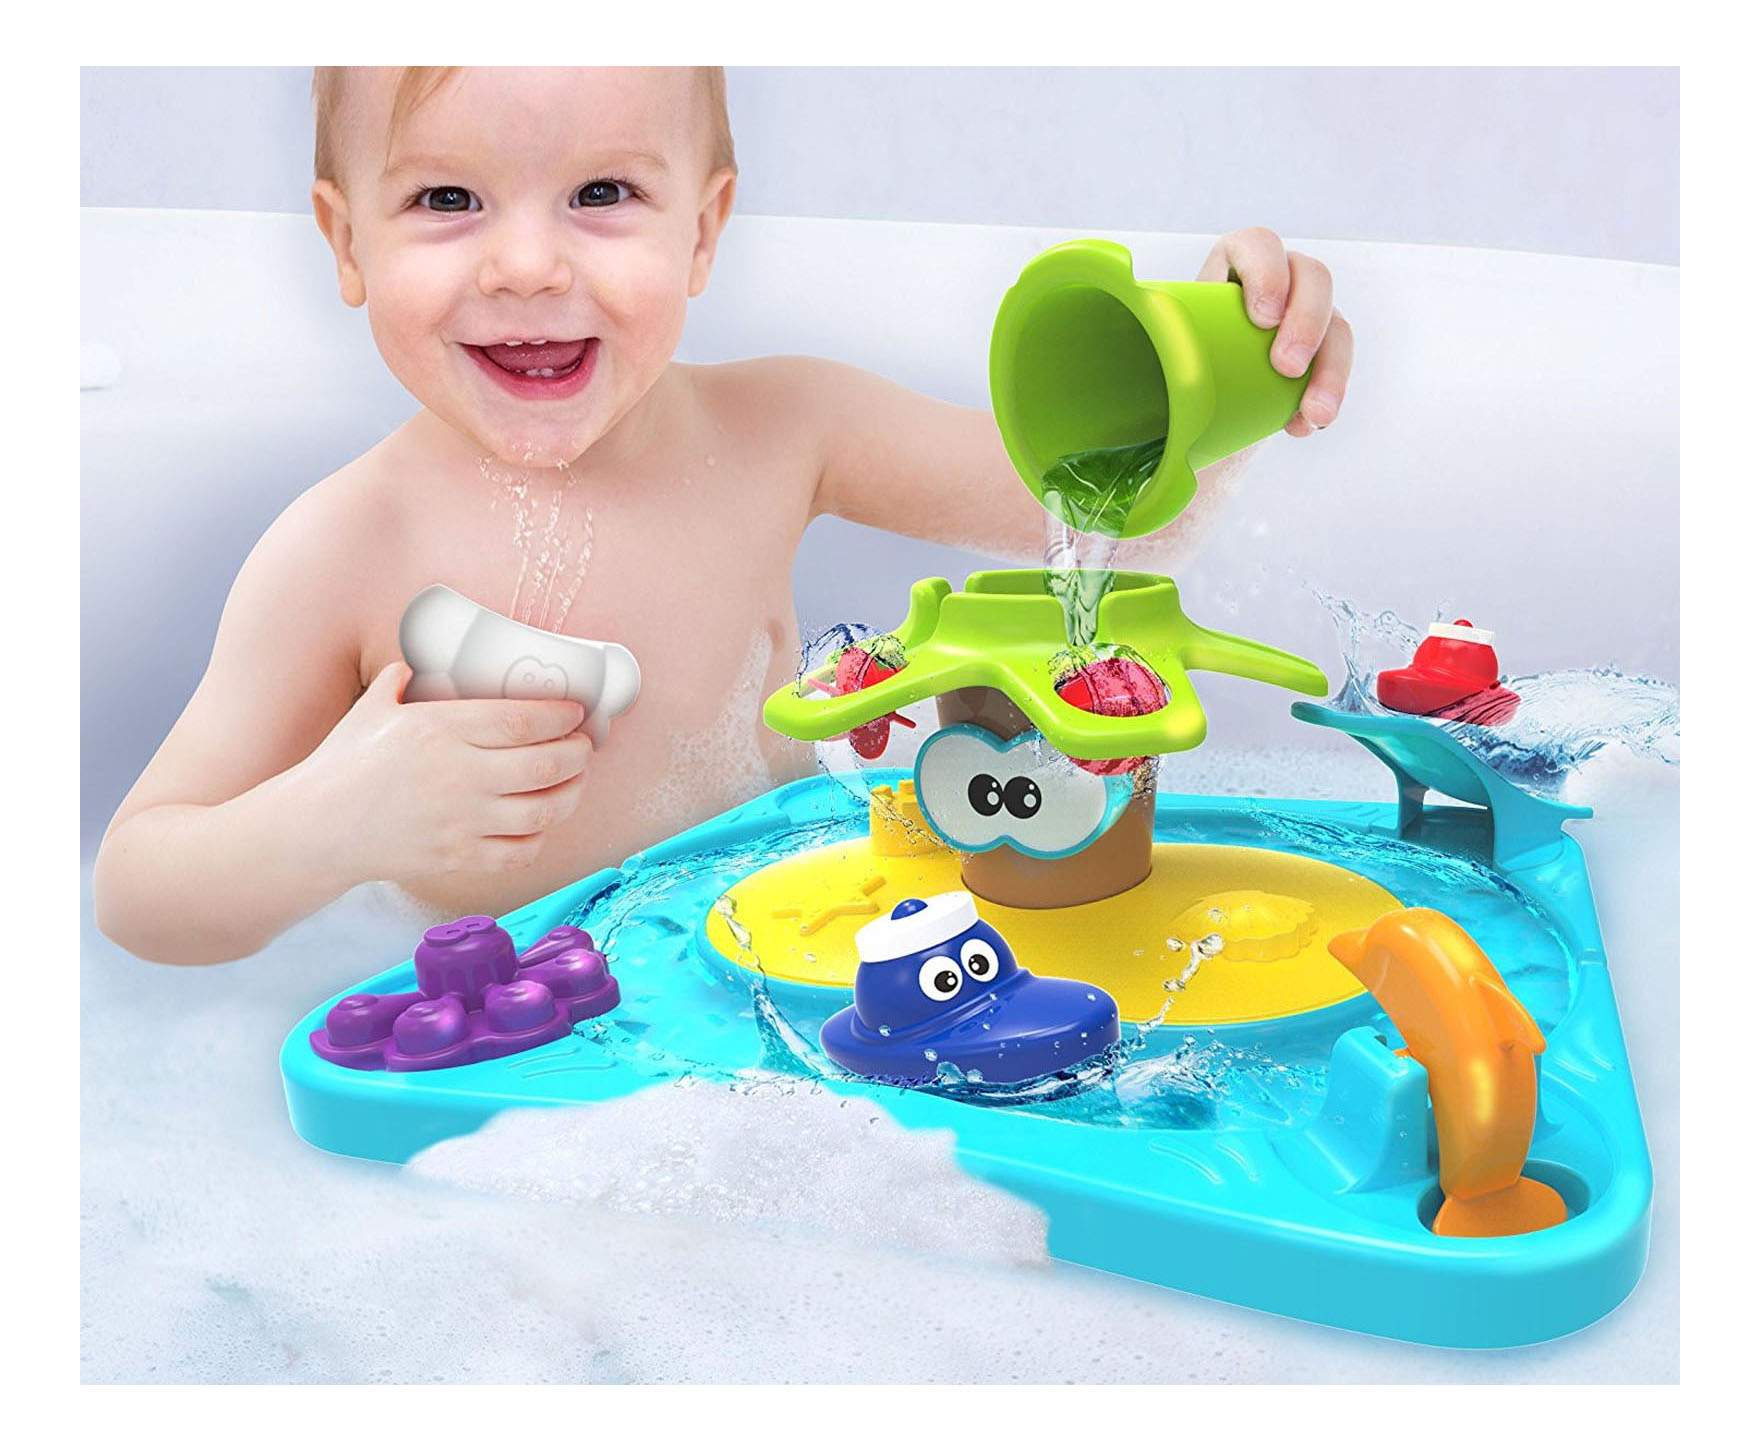 Игра ребенок в ванне. Детская игрушка для ванны. Игрушки для купания малышей. Интересные игрушки для ванной. Игрушки в ванную для детей.